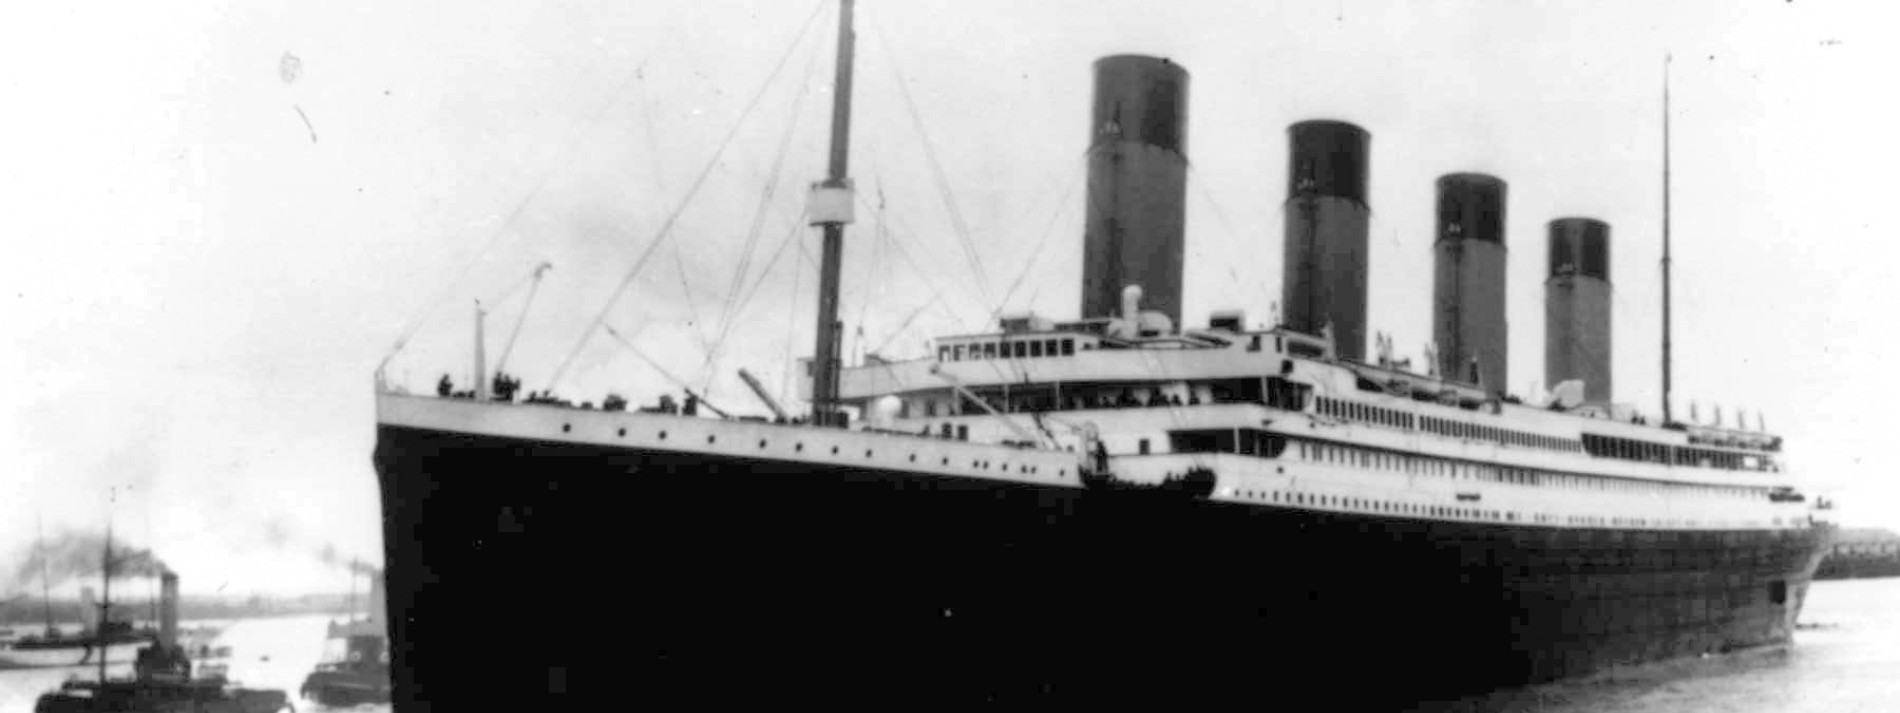 Millionensumme für Taschenuhr von Titanic-Passagier